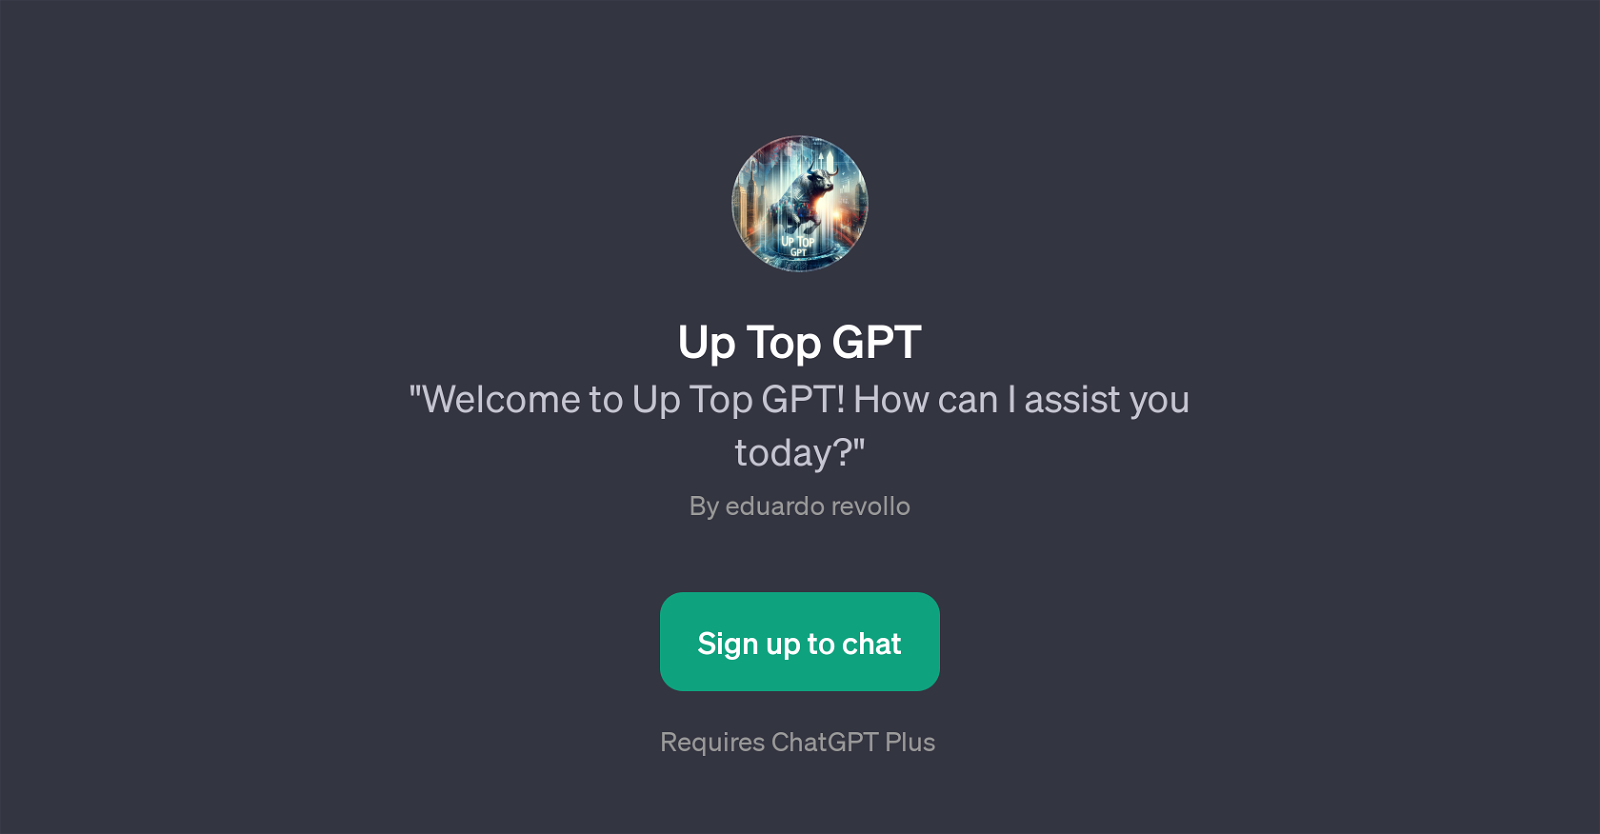 Up Top GPT website